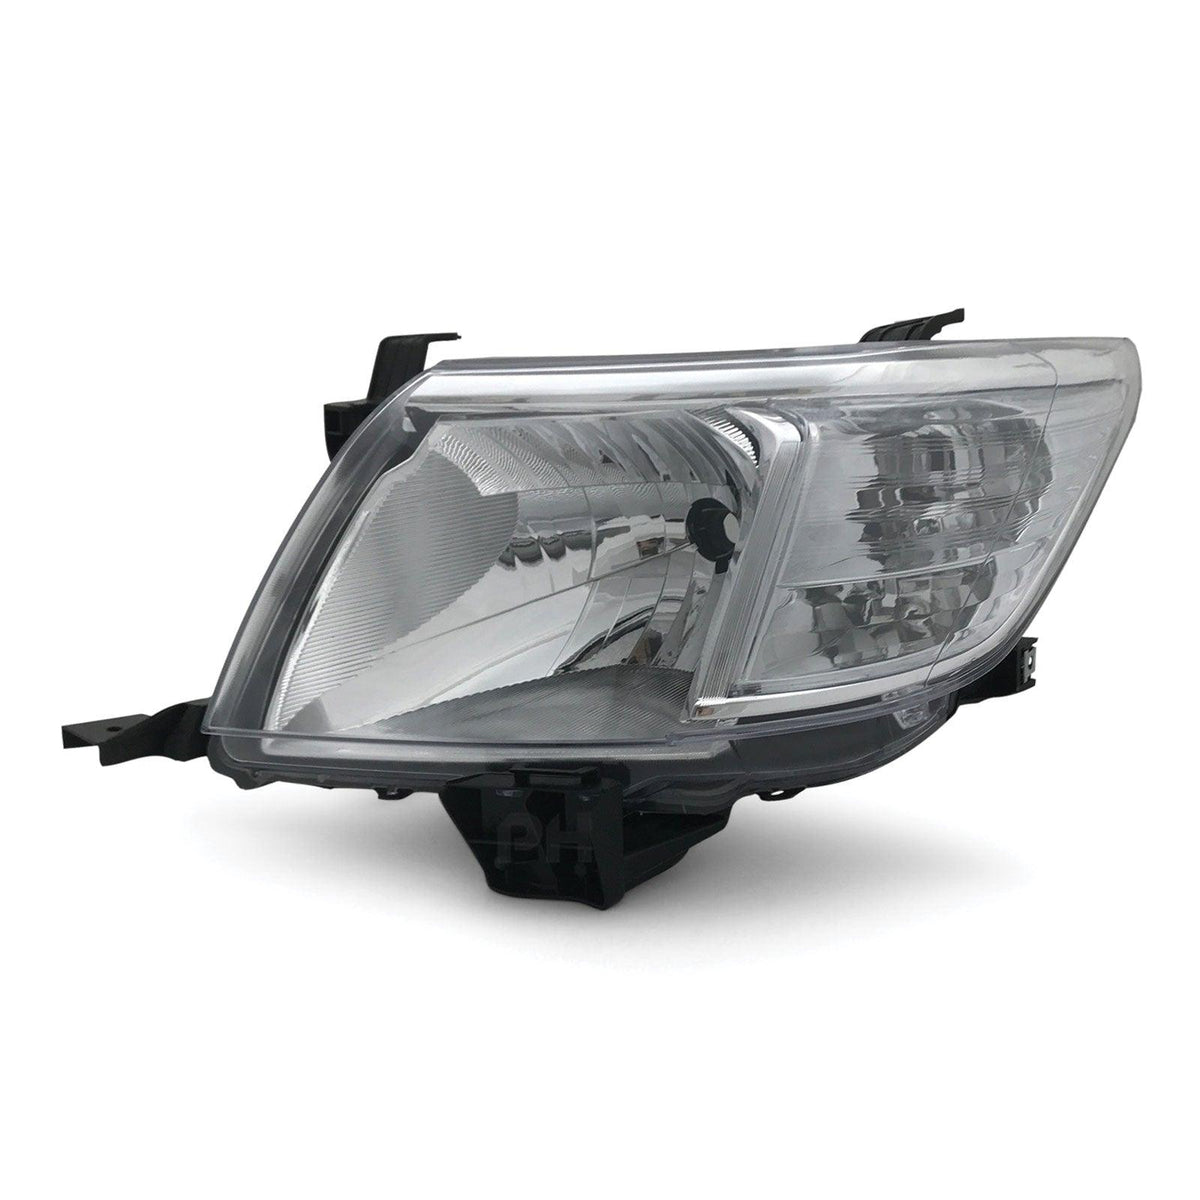 Headlights PAIR Fits Toyota Hilux N70 2WD 4WD 06-2011 - 03-2015 - 4X4OC™